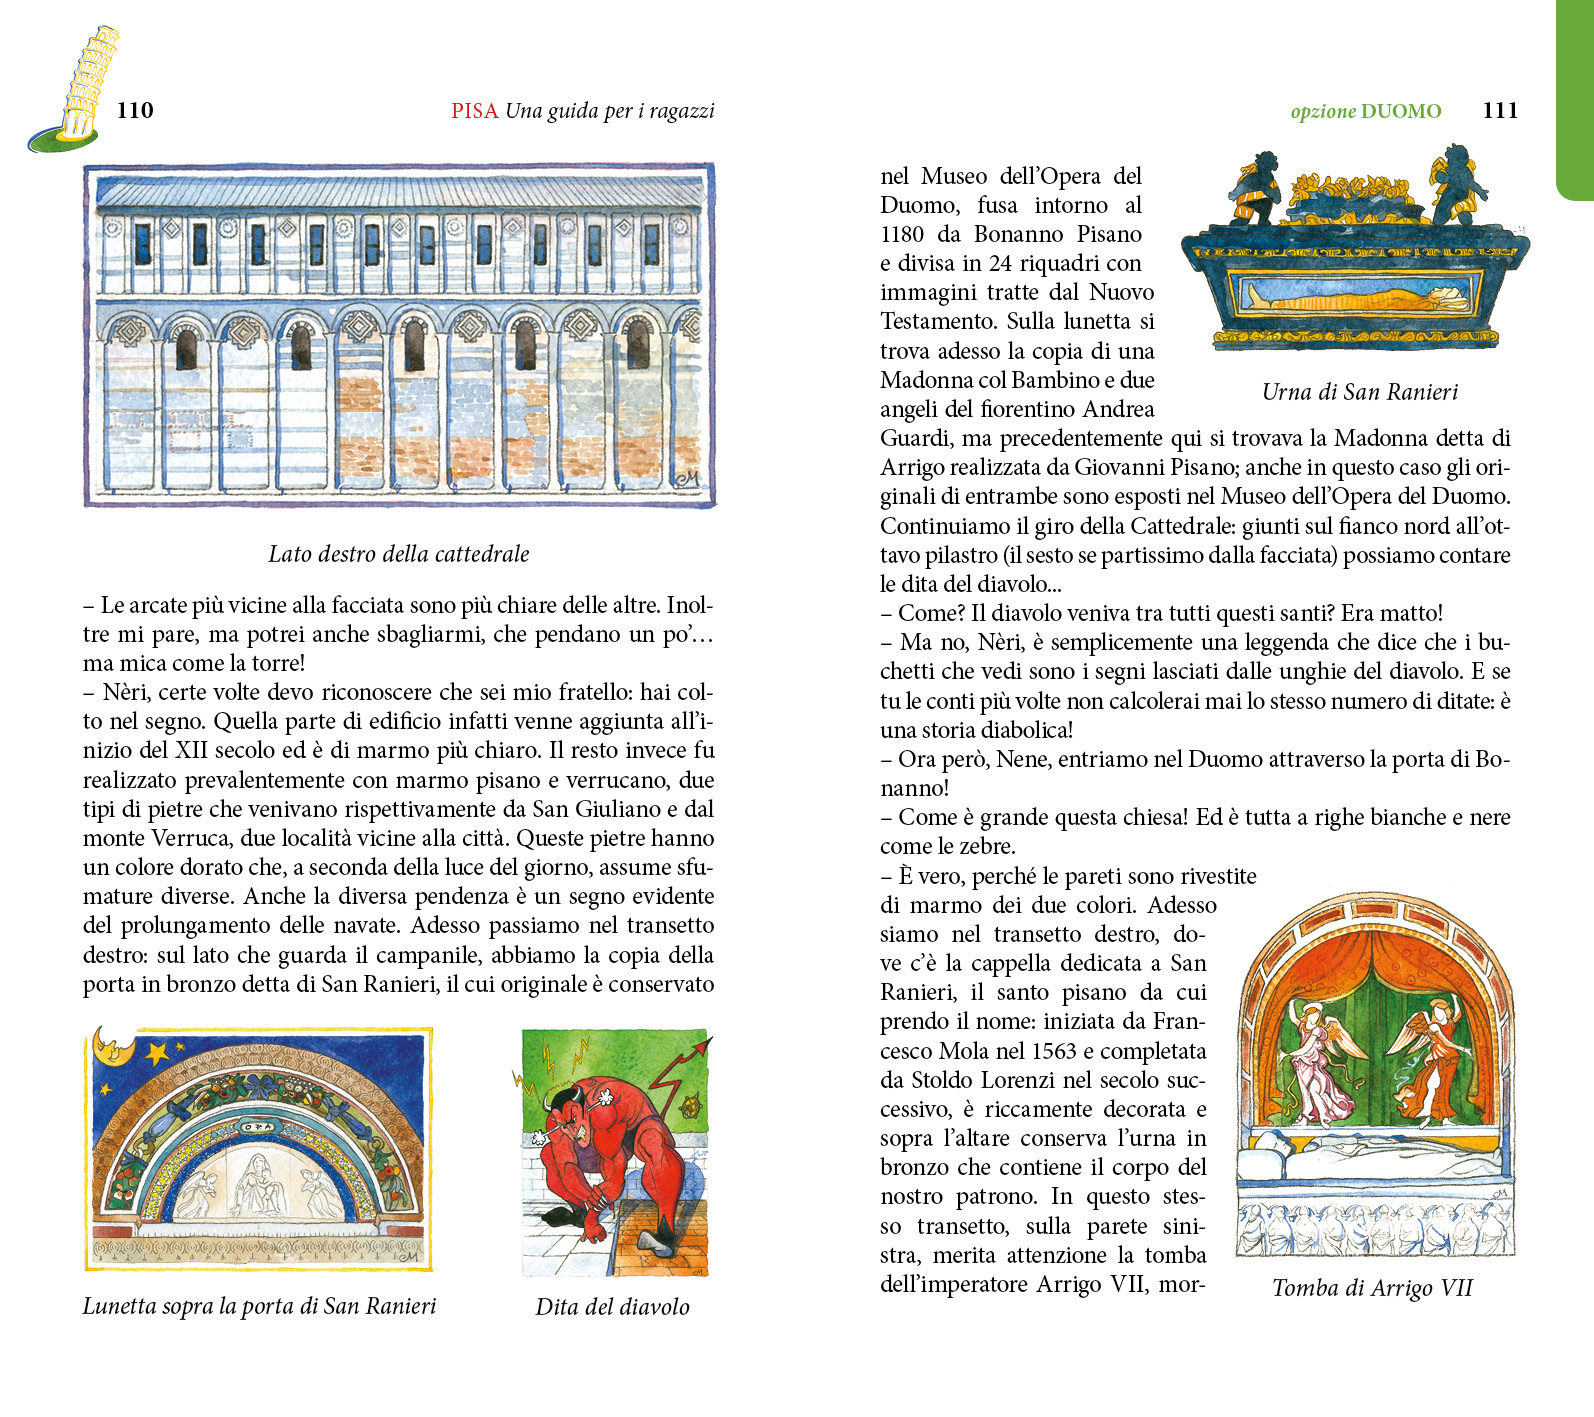 7/ - PISA Una guida per i ragazzi. terza edizione con nuovi itinerari e nuove illustrazioni